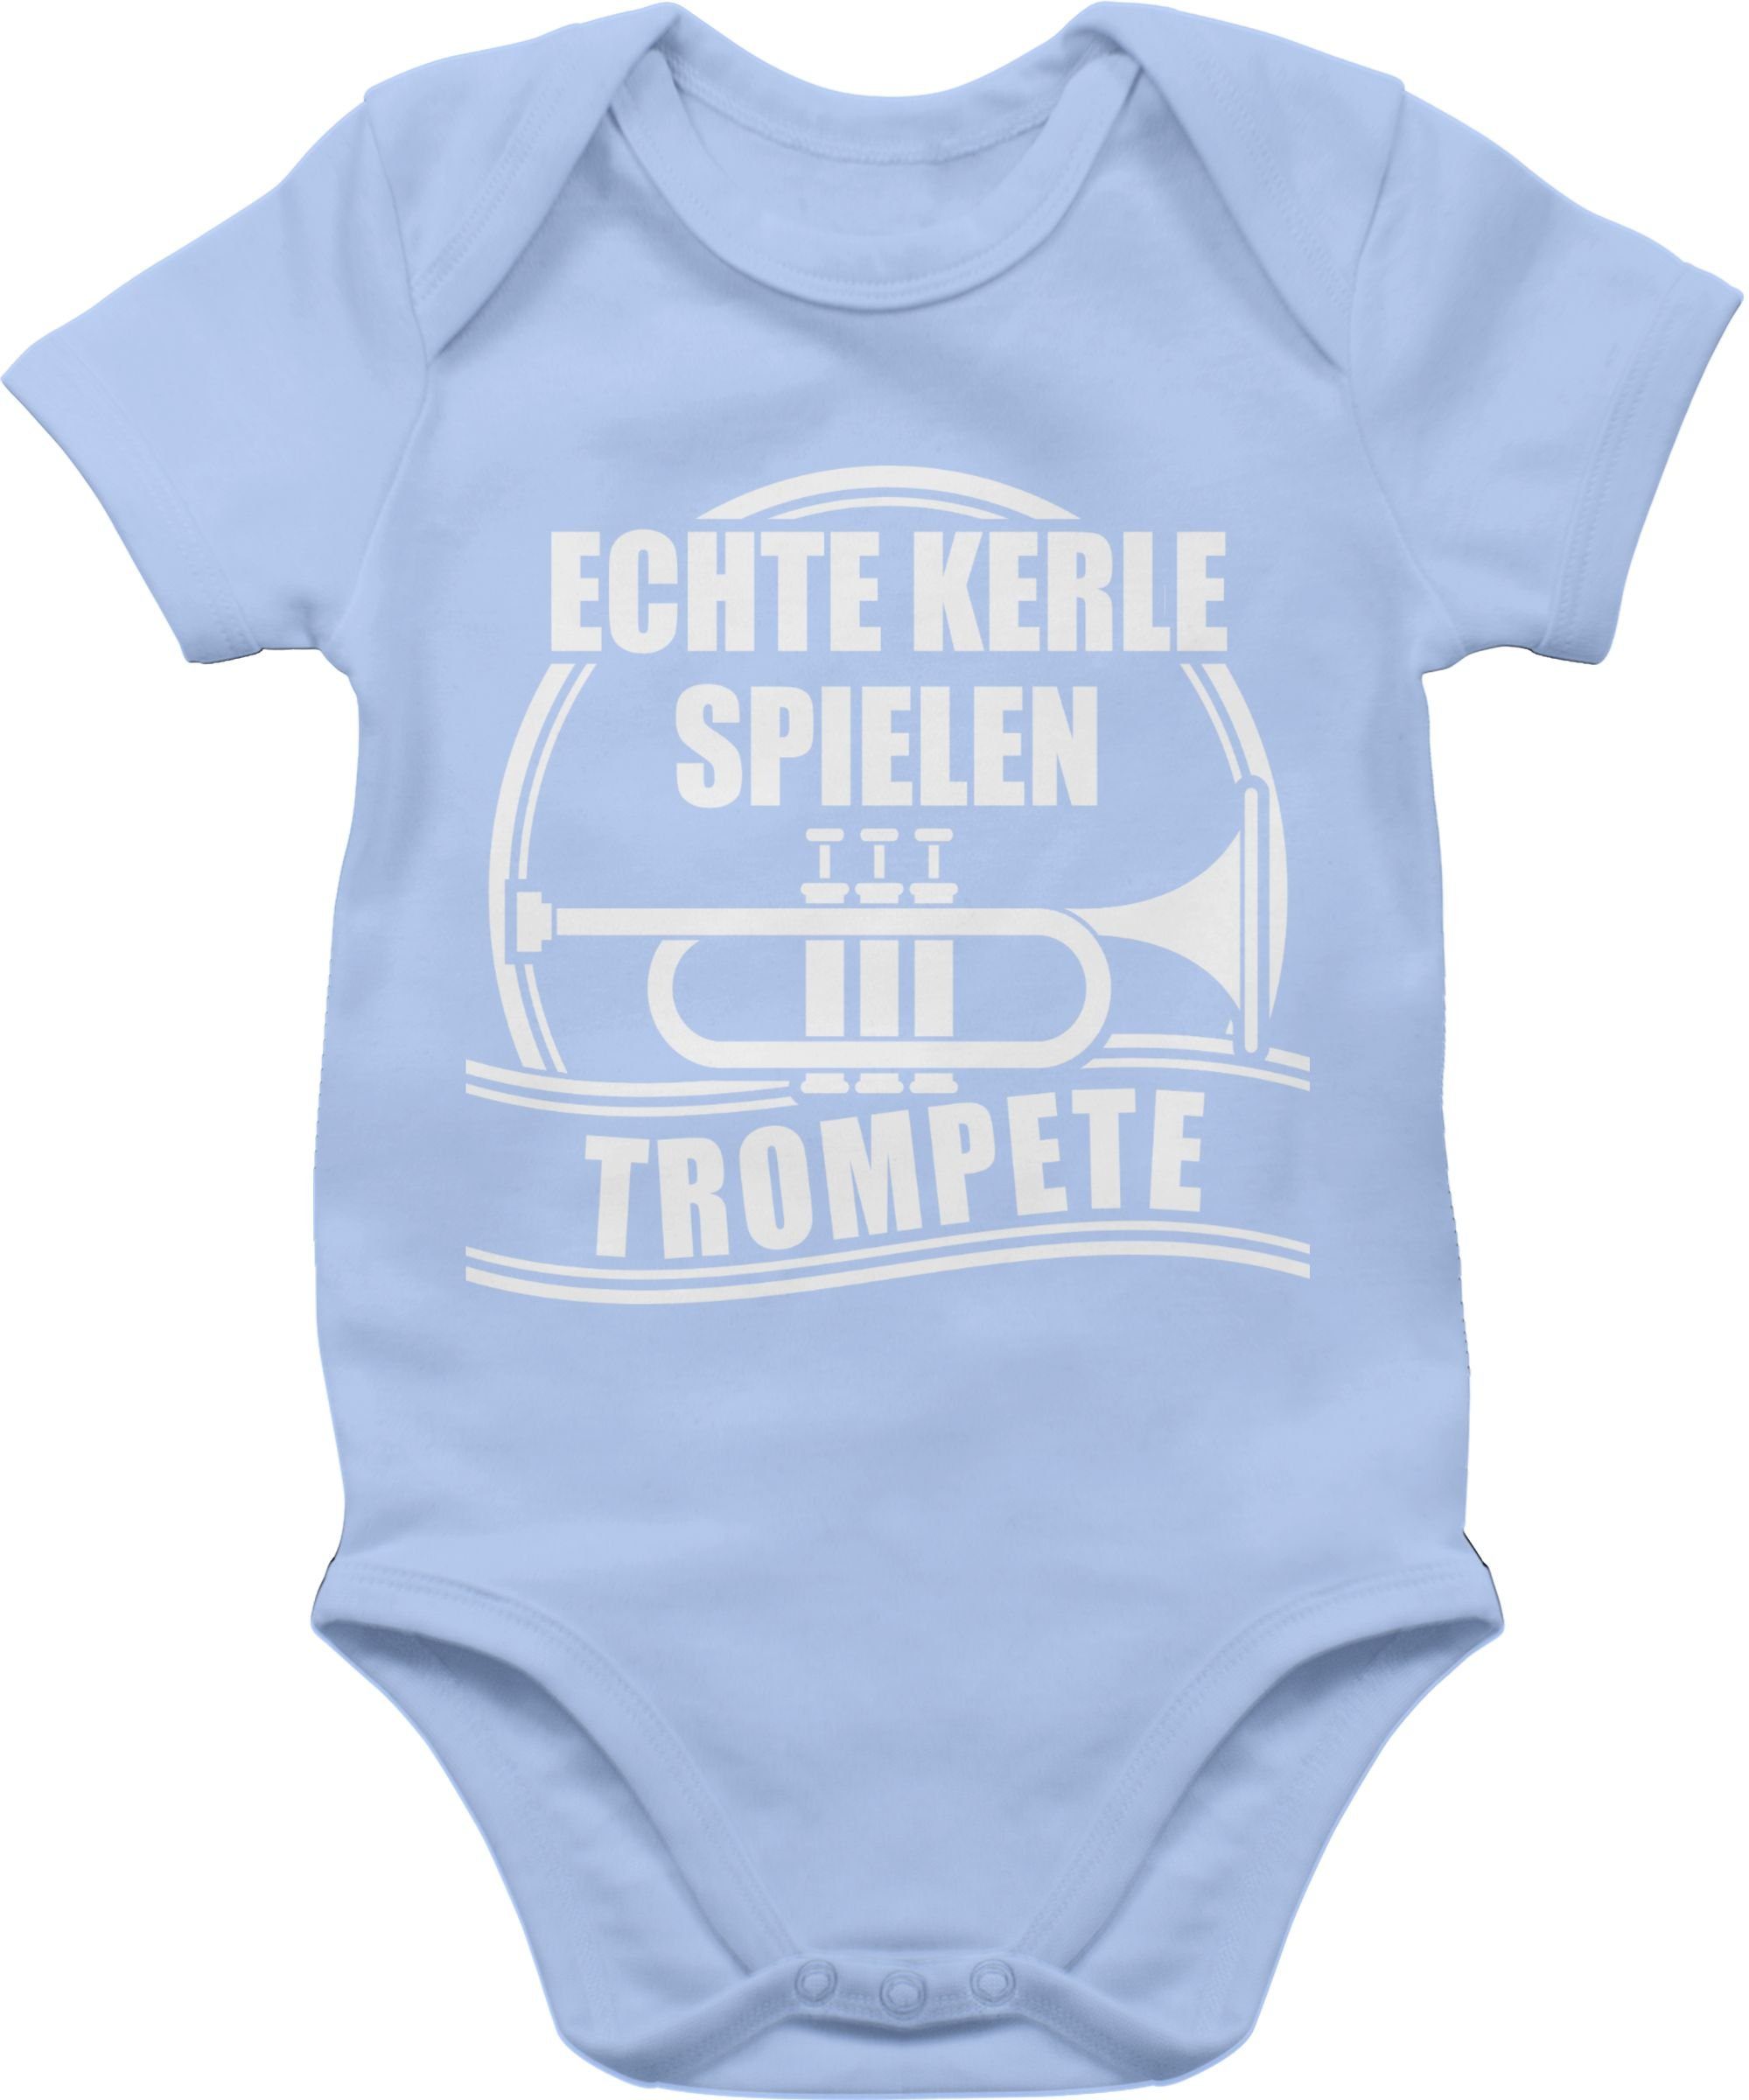 Baby Sprüche Kerle Trompete Shirtracer Babyblau spielen Echte Shirtbody 2